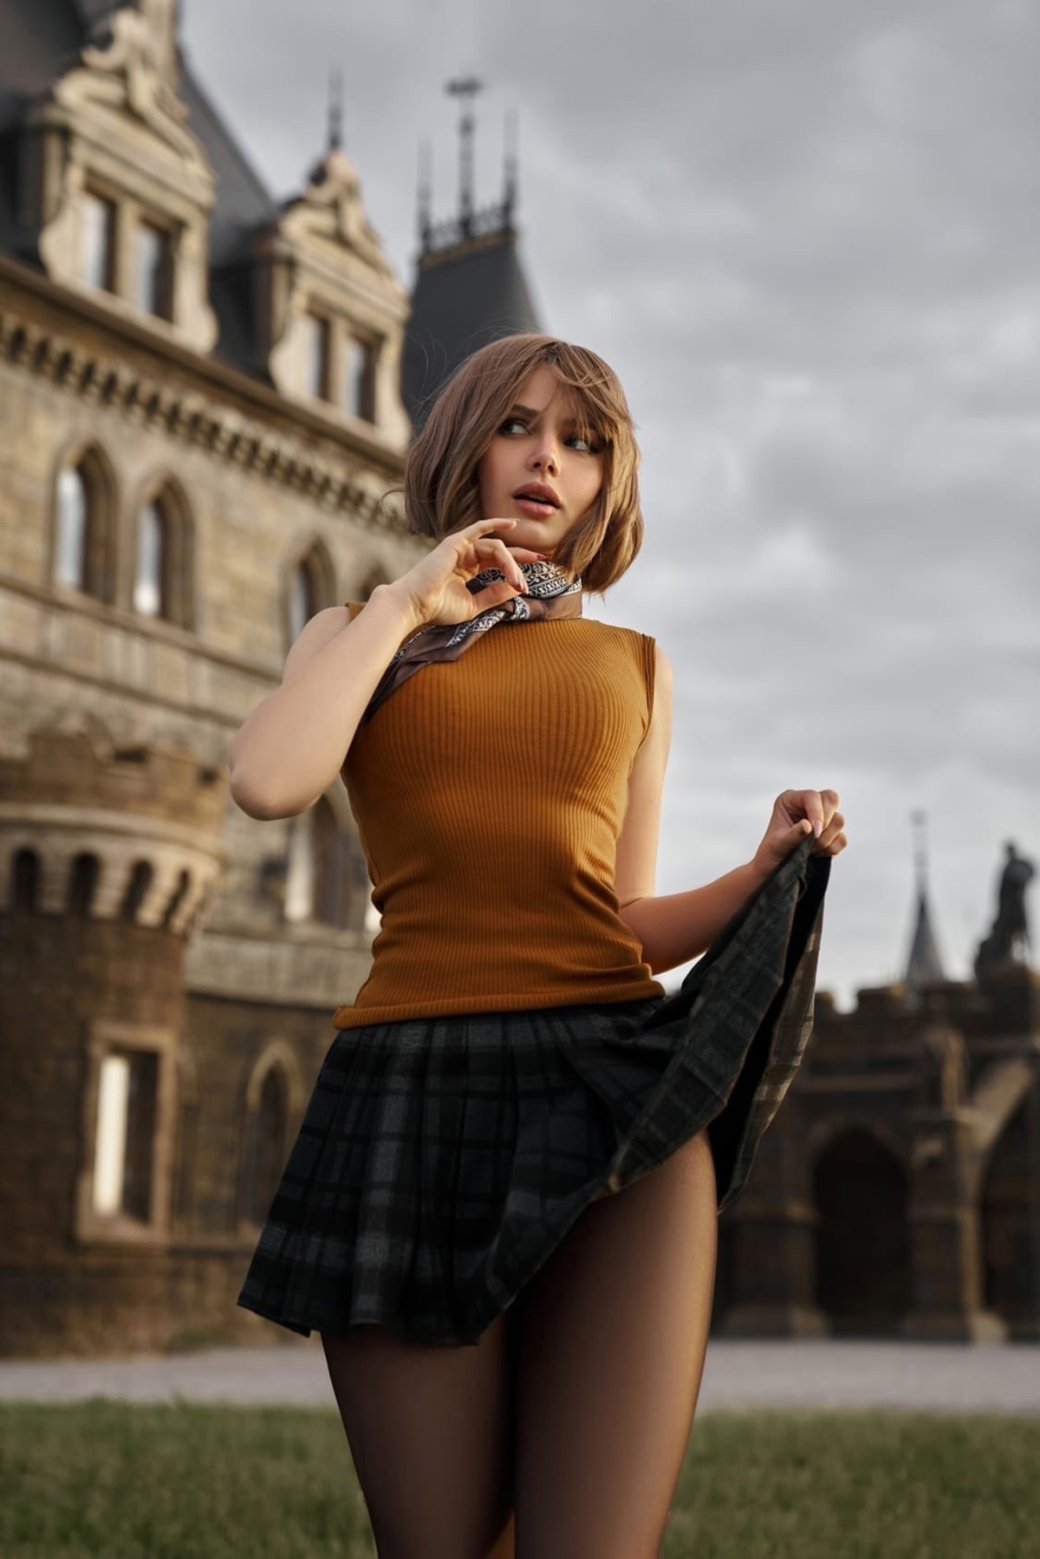 Галерея Модель представила косплей на Эшли Грэм и Аду Вонг из ремейка Resident Evil 4 - 6 фото